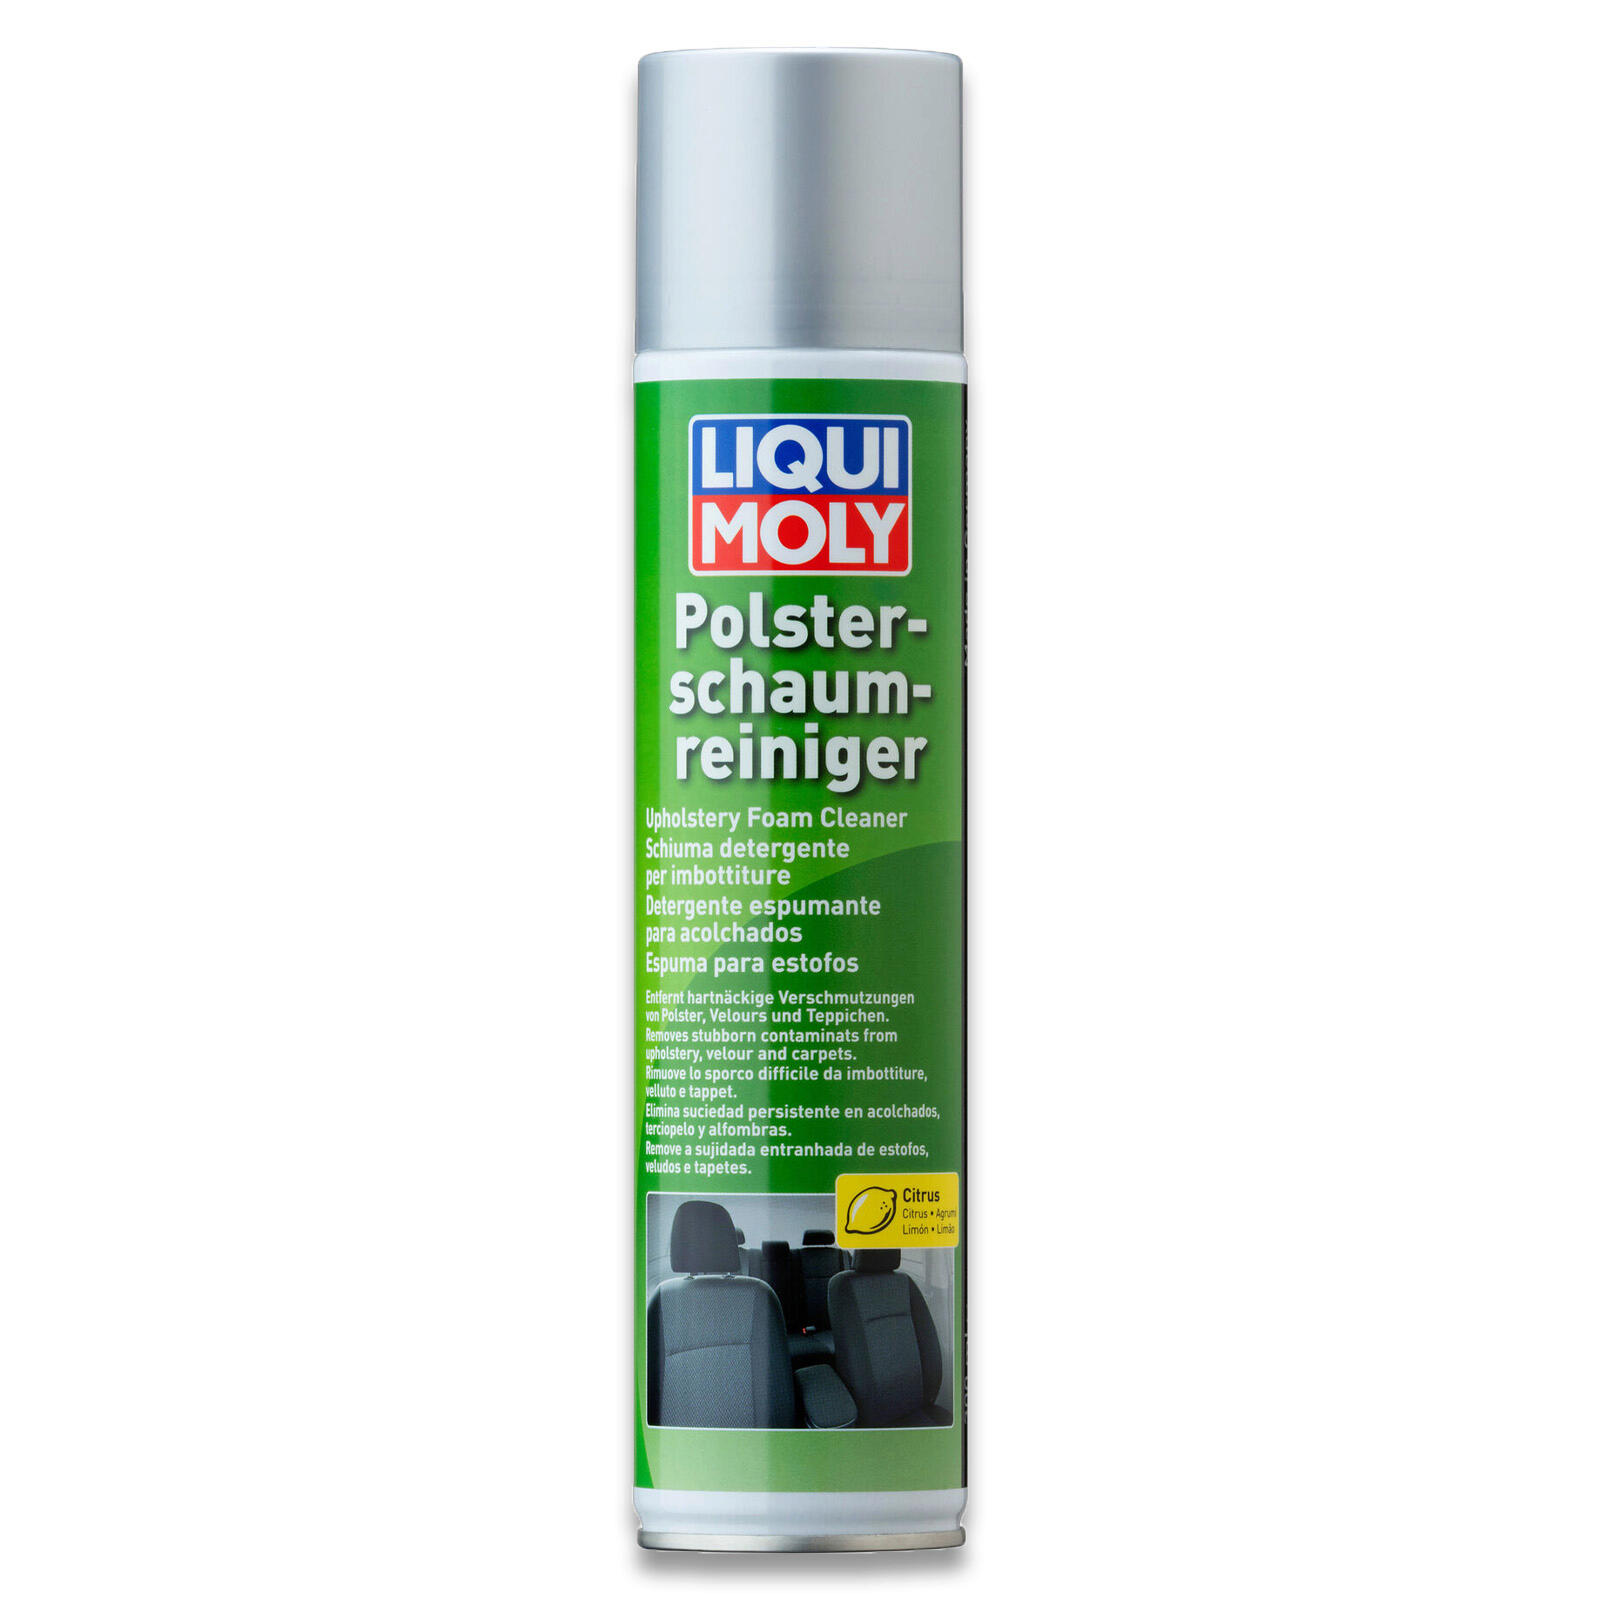 Liqui Moly Polster-Schaum-Reiniger 300ml